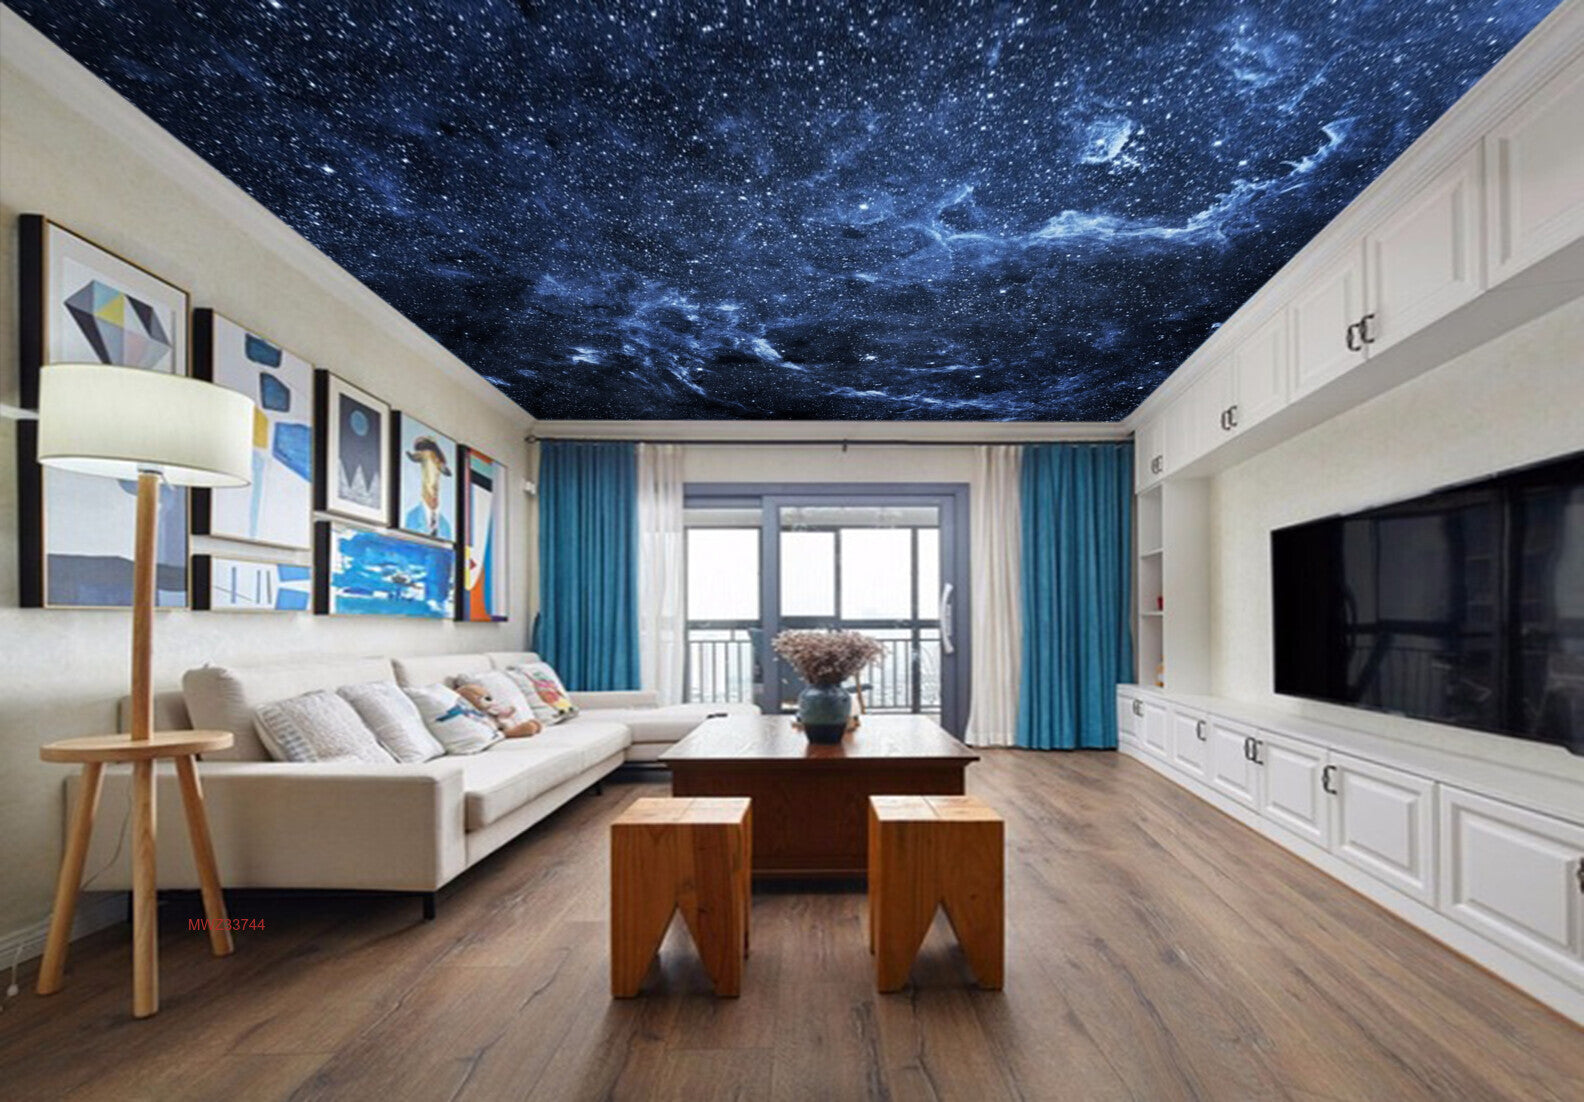 Avikalp MWZ3374 Sky Stars Galaxy HD Wallpaper for Ceiling